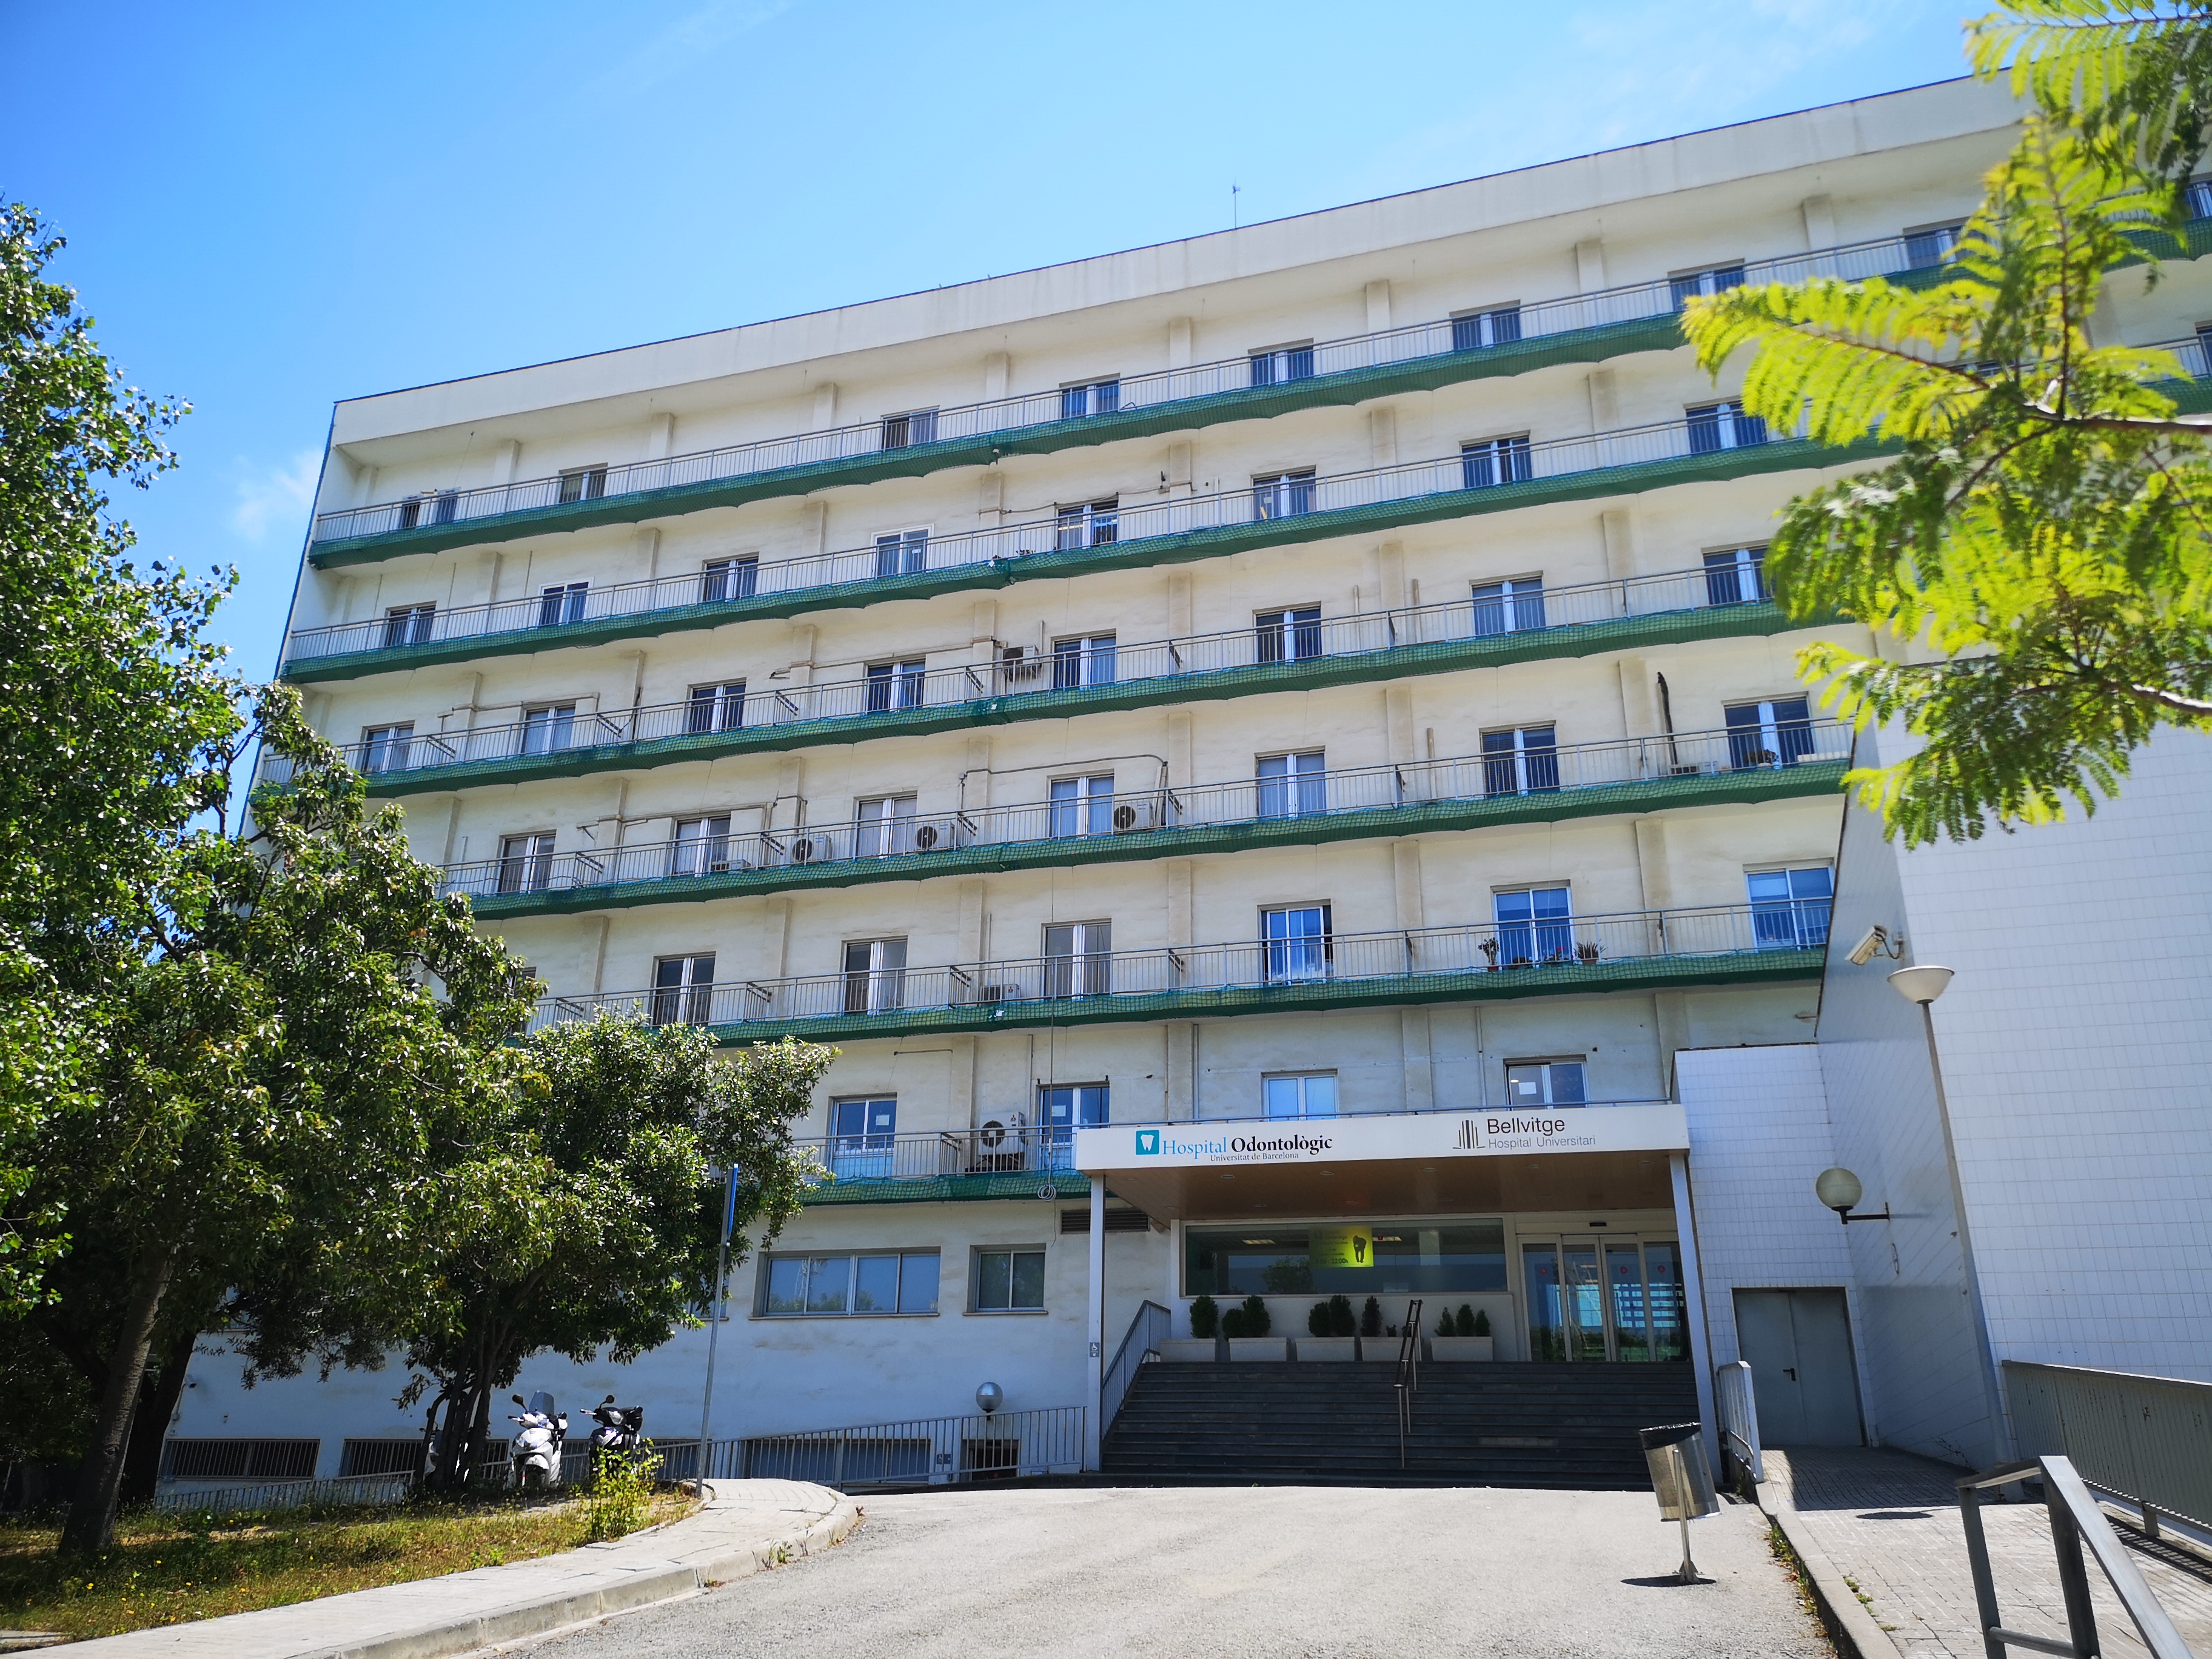 El Hospital Odontològic UB se mantendrá abierto durante todo el mes de agosto